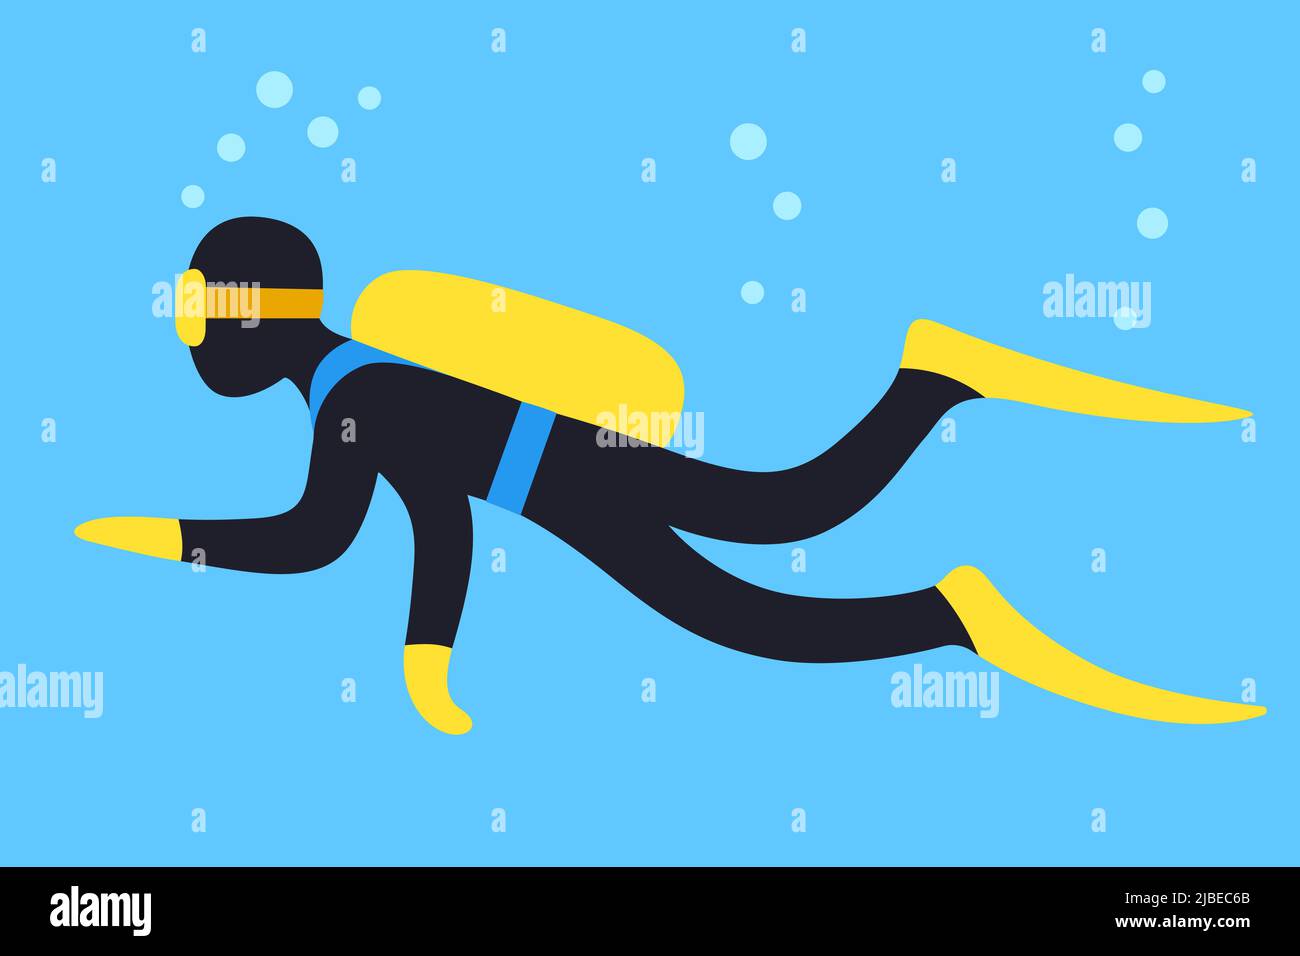 Scuba Diving Cartoon Vektorgrafik. Taucher schwimmen unter Wasser auf blauem Hintergrund. Stock Vektor